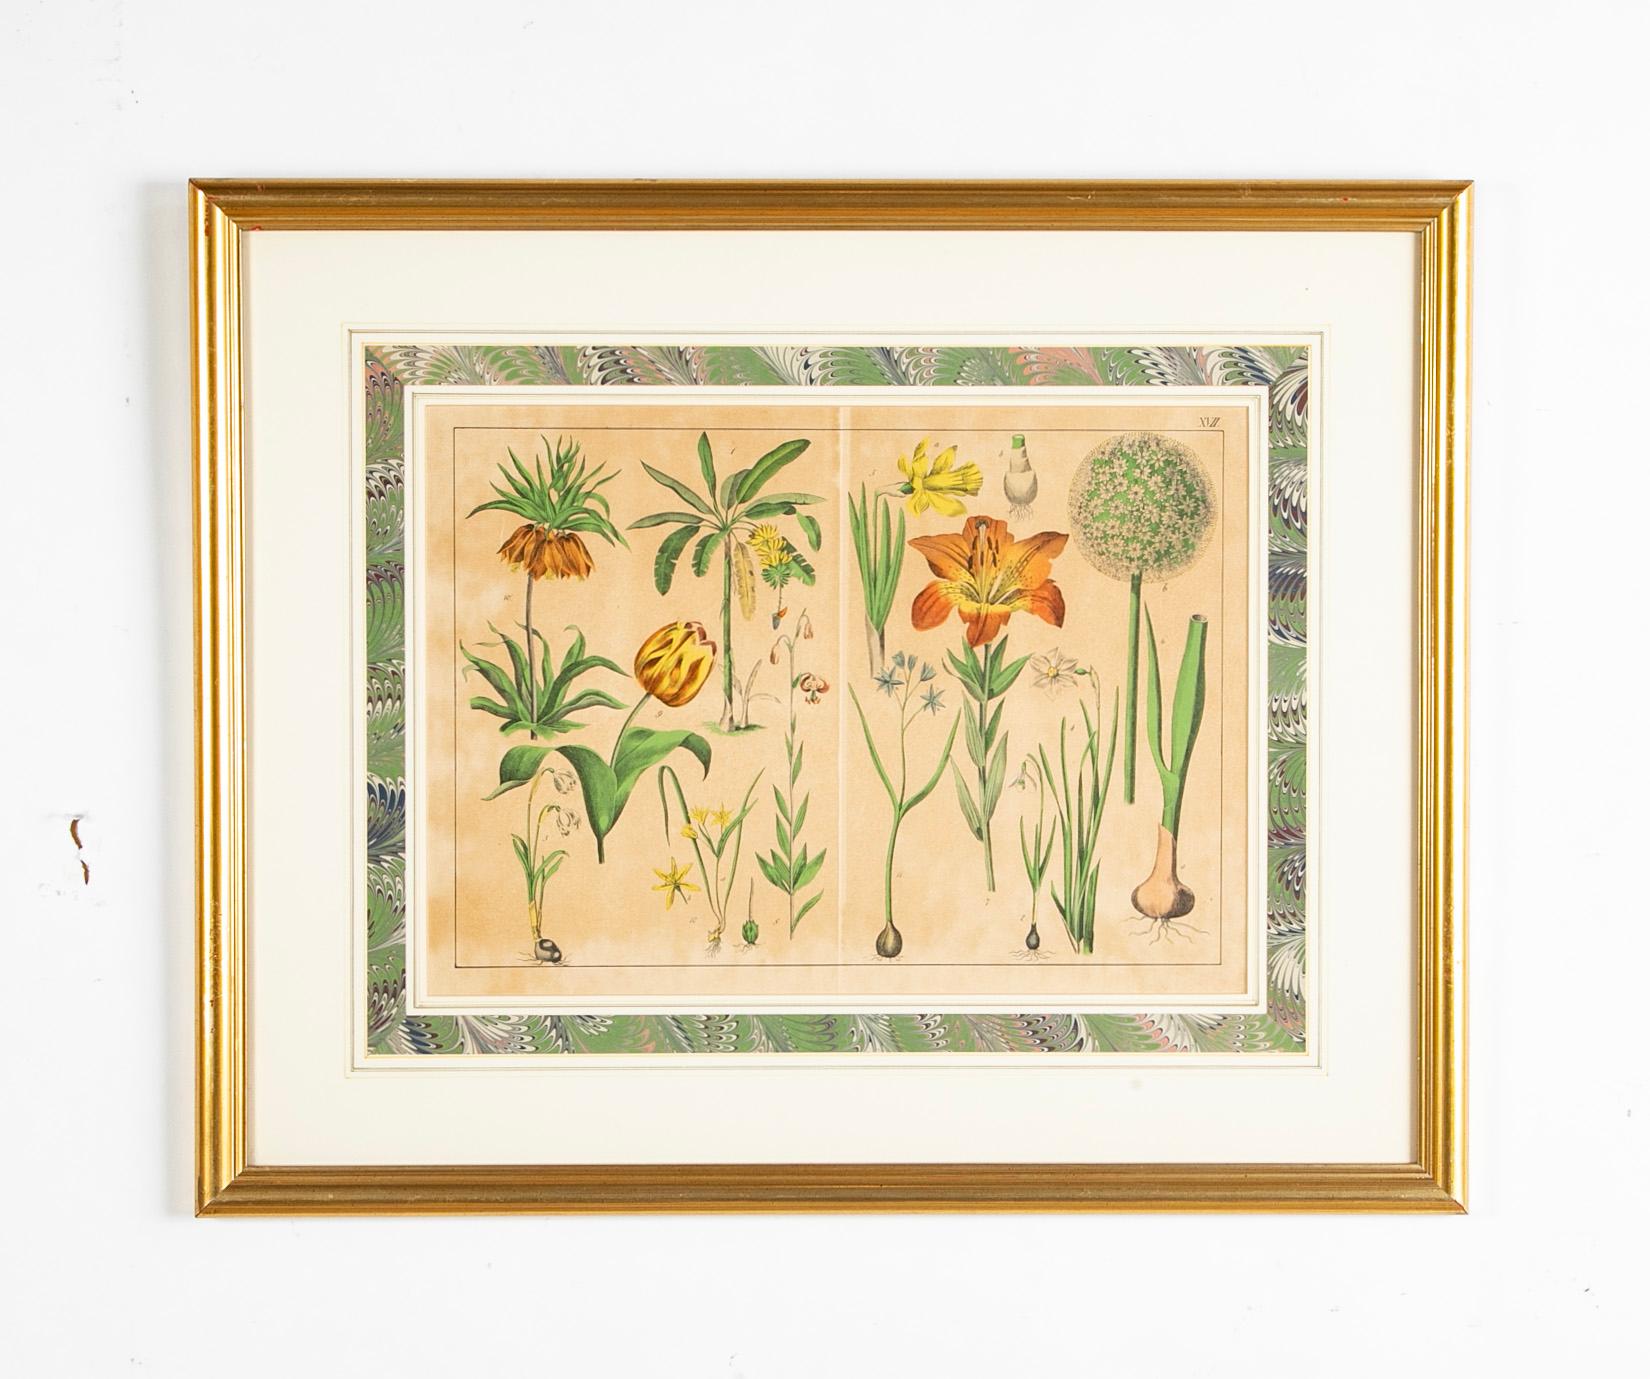 Paar deutsche botanische Farblithografien des 19. Jahrhunderts in vergoldeten Holzrahmen mit schönen marmorierten Passepartouts. Jede mit verschiedenen Pflanzen und Bäumen, darunter Tulpen und Lilien. 
24 Zoll breit und 20 Zoll hoch 